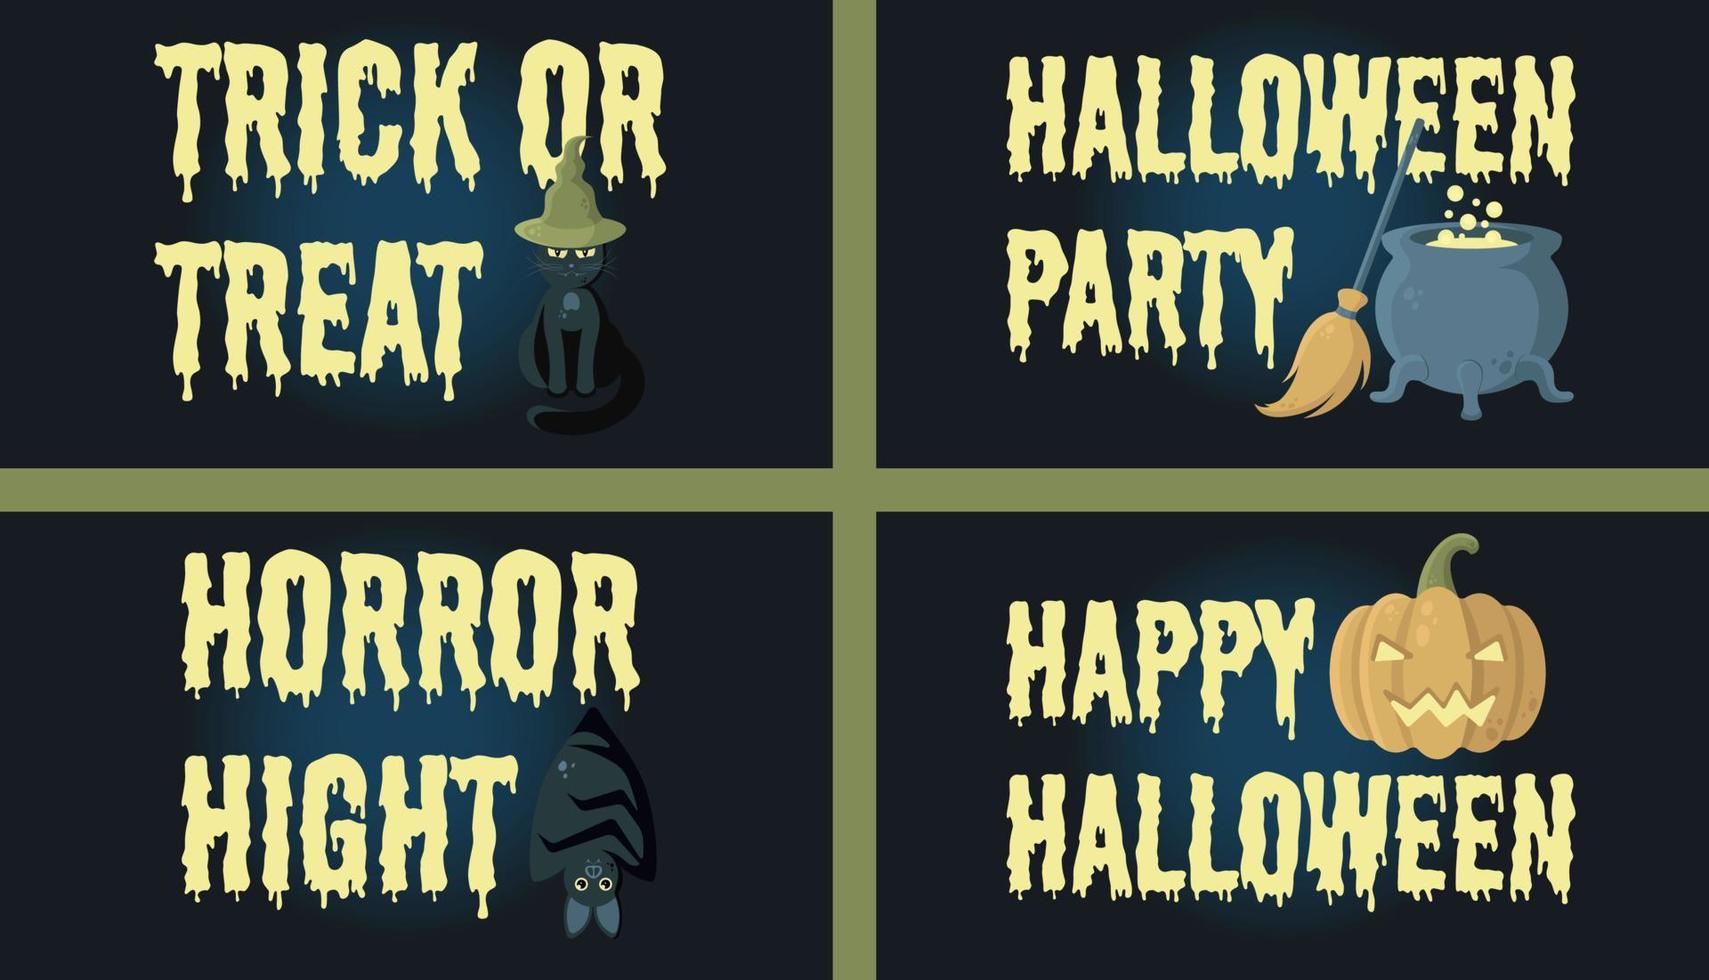 Halloween-Banner-Vektor-Set. beschriftung mit schwarzer katze, fledermaus, jack o'lantern, kessel, besenillustration. perfekt für Websites, soziale Medien, gedruckte Materialien vektor